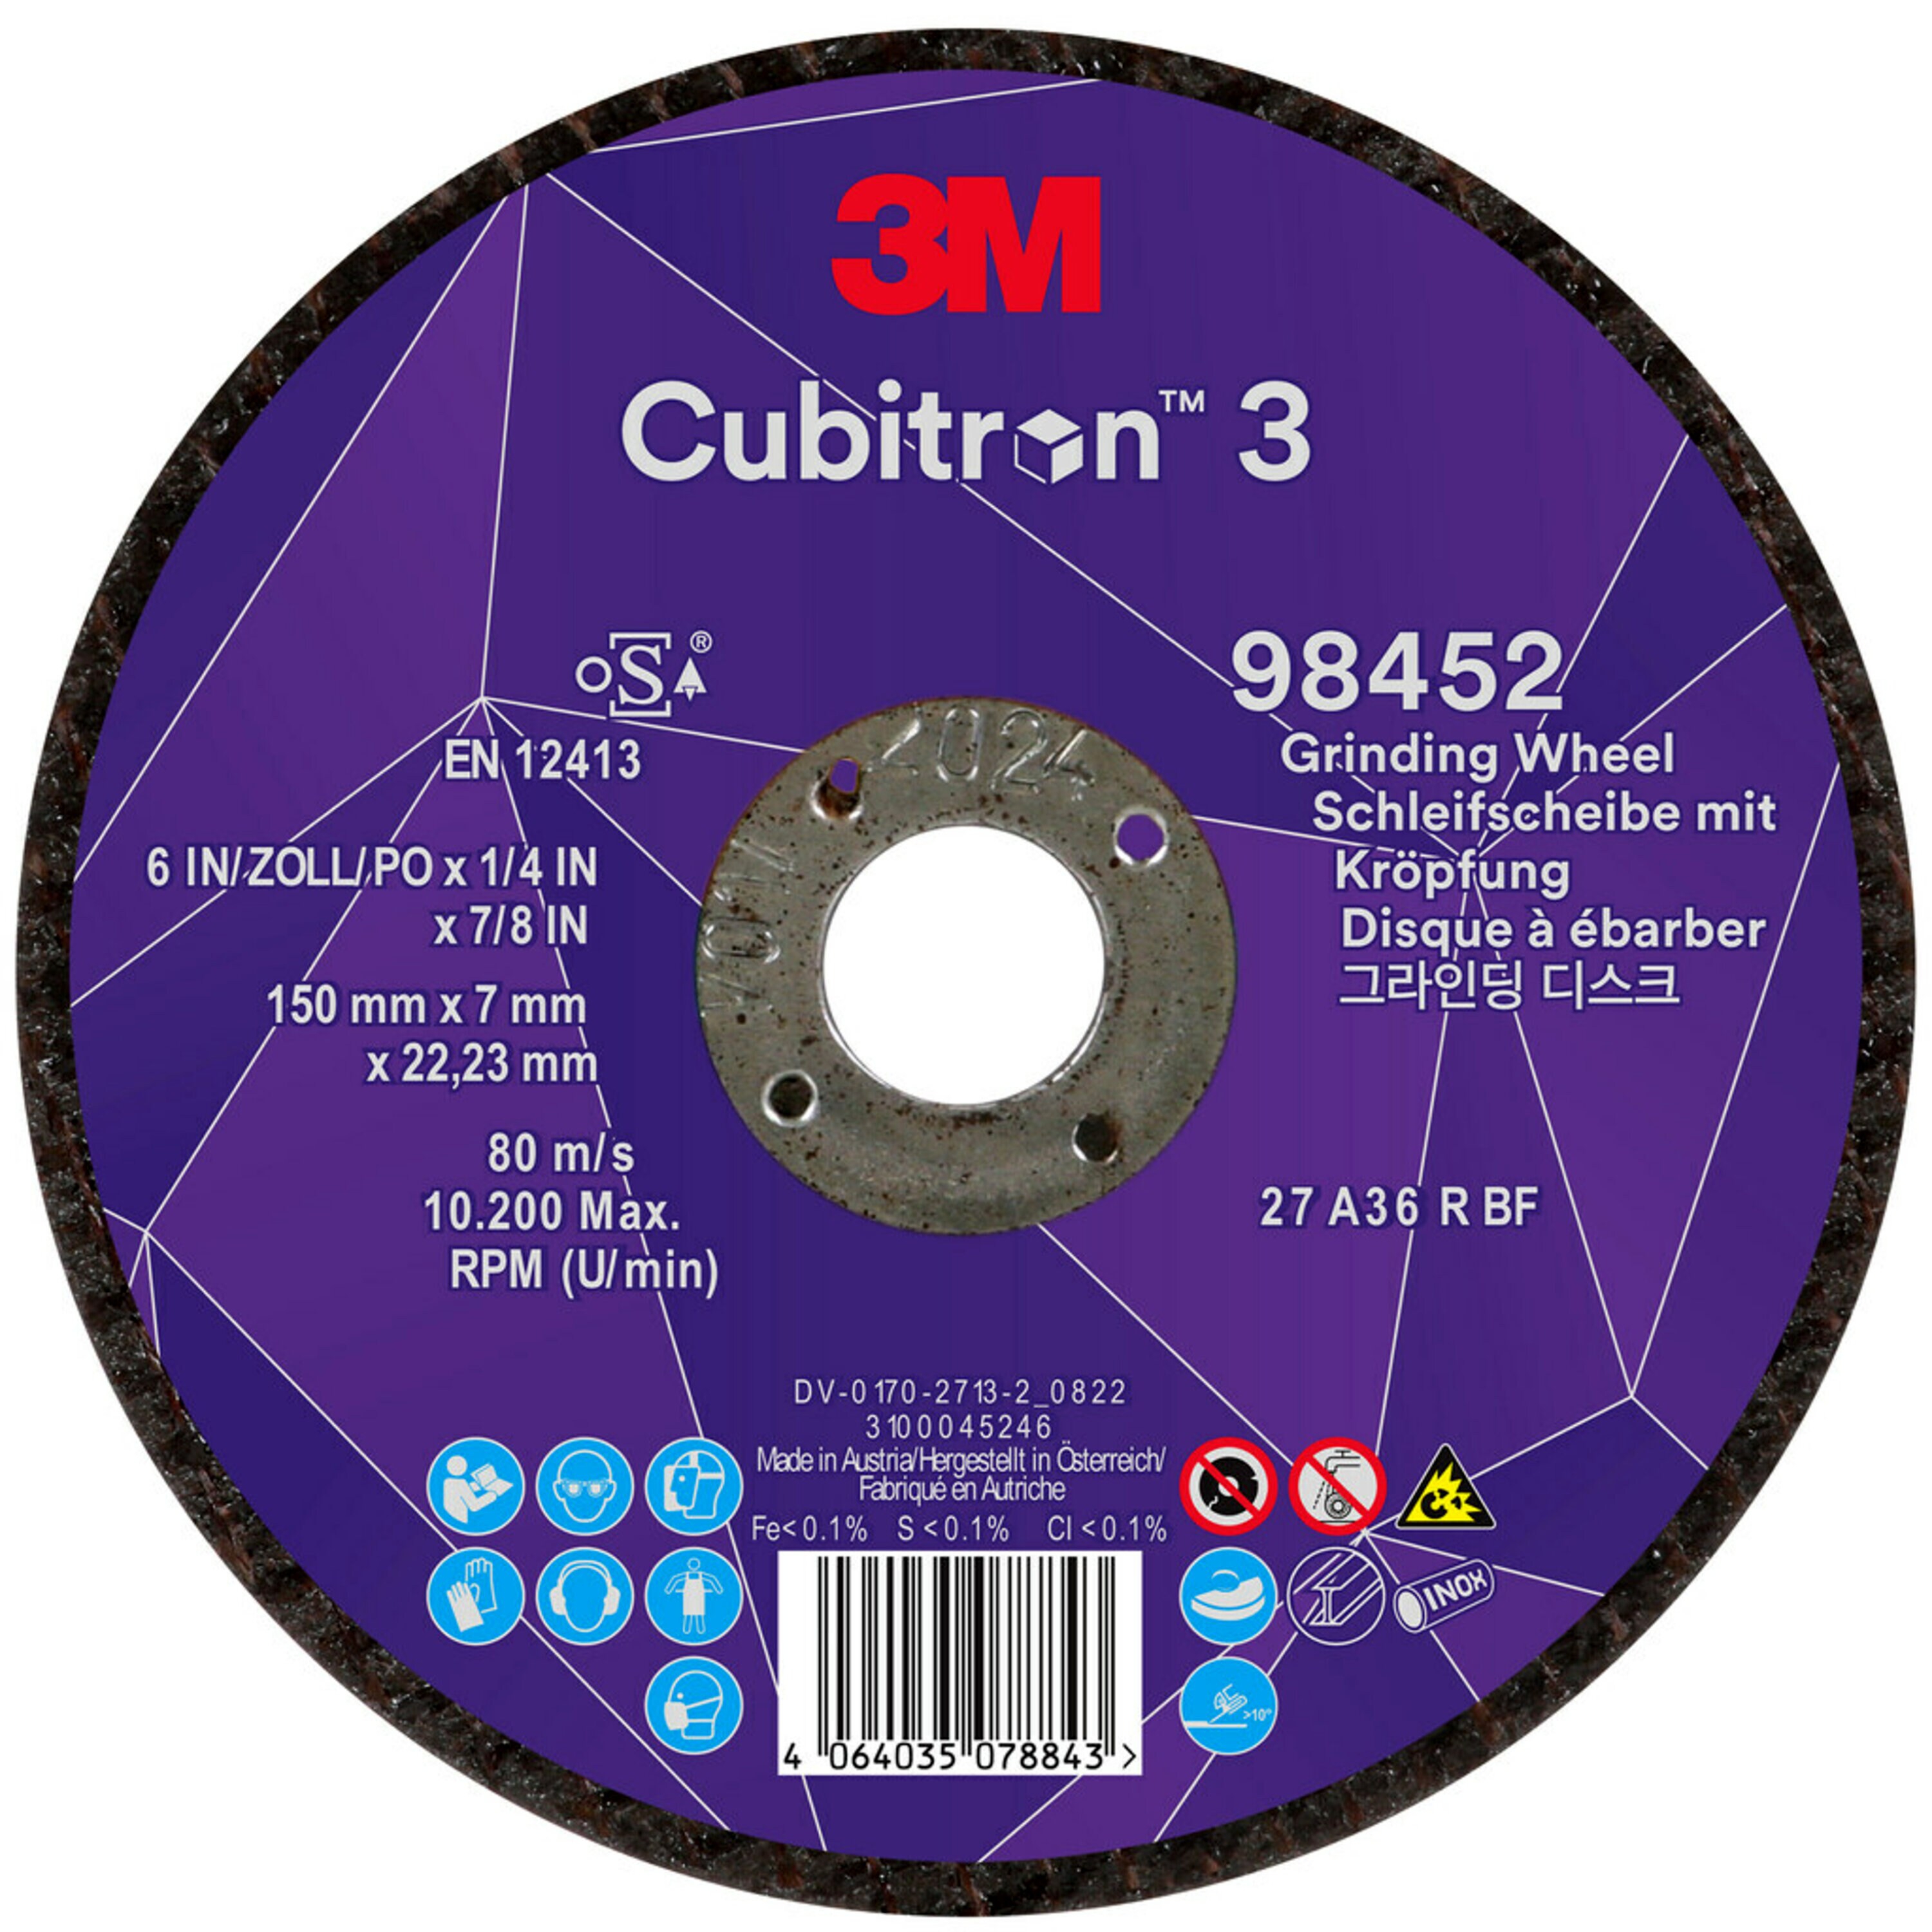 3M Cubitron 3 disco de desbaste, 150 mm, 7.0 mm, 22.23 mm, 36 , tipo 27 # 98452